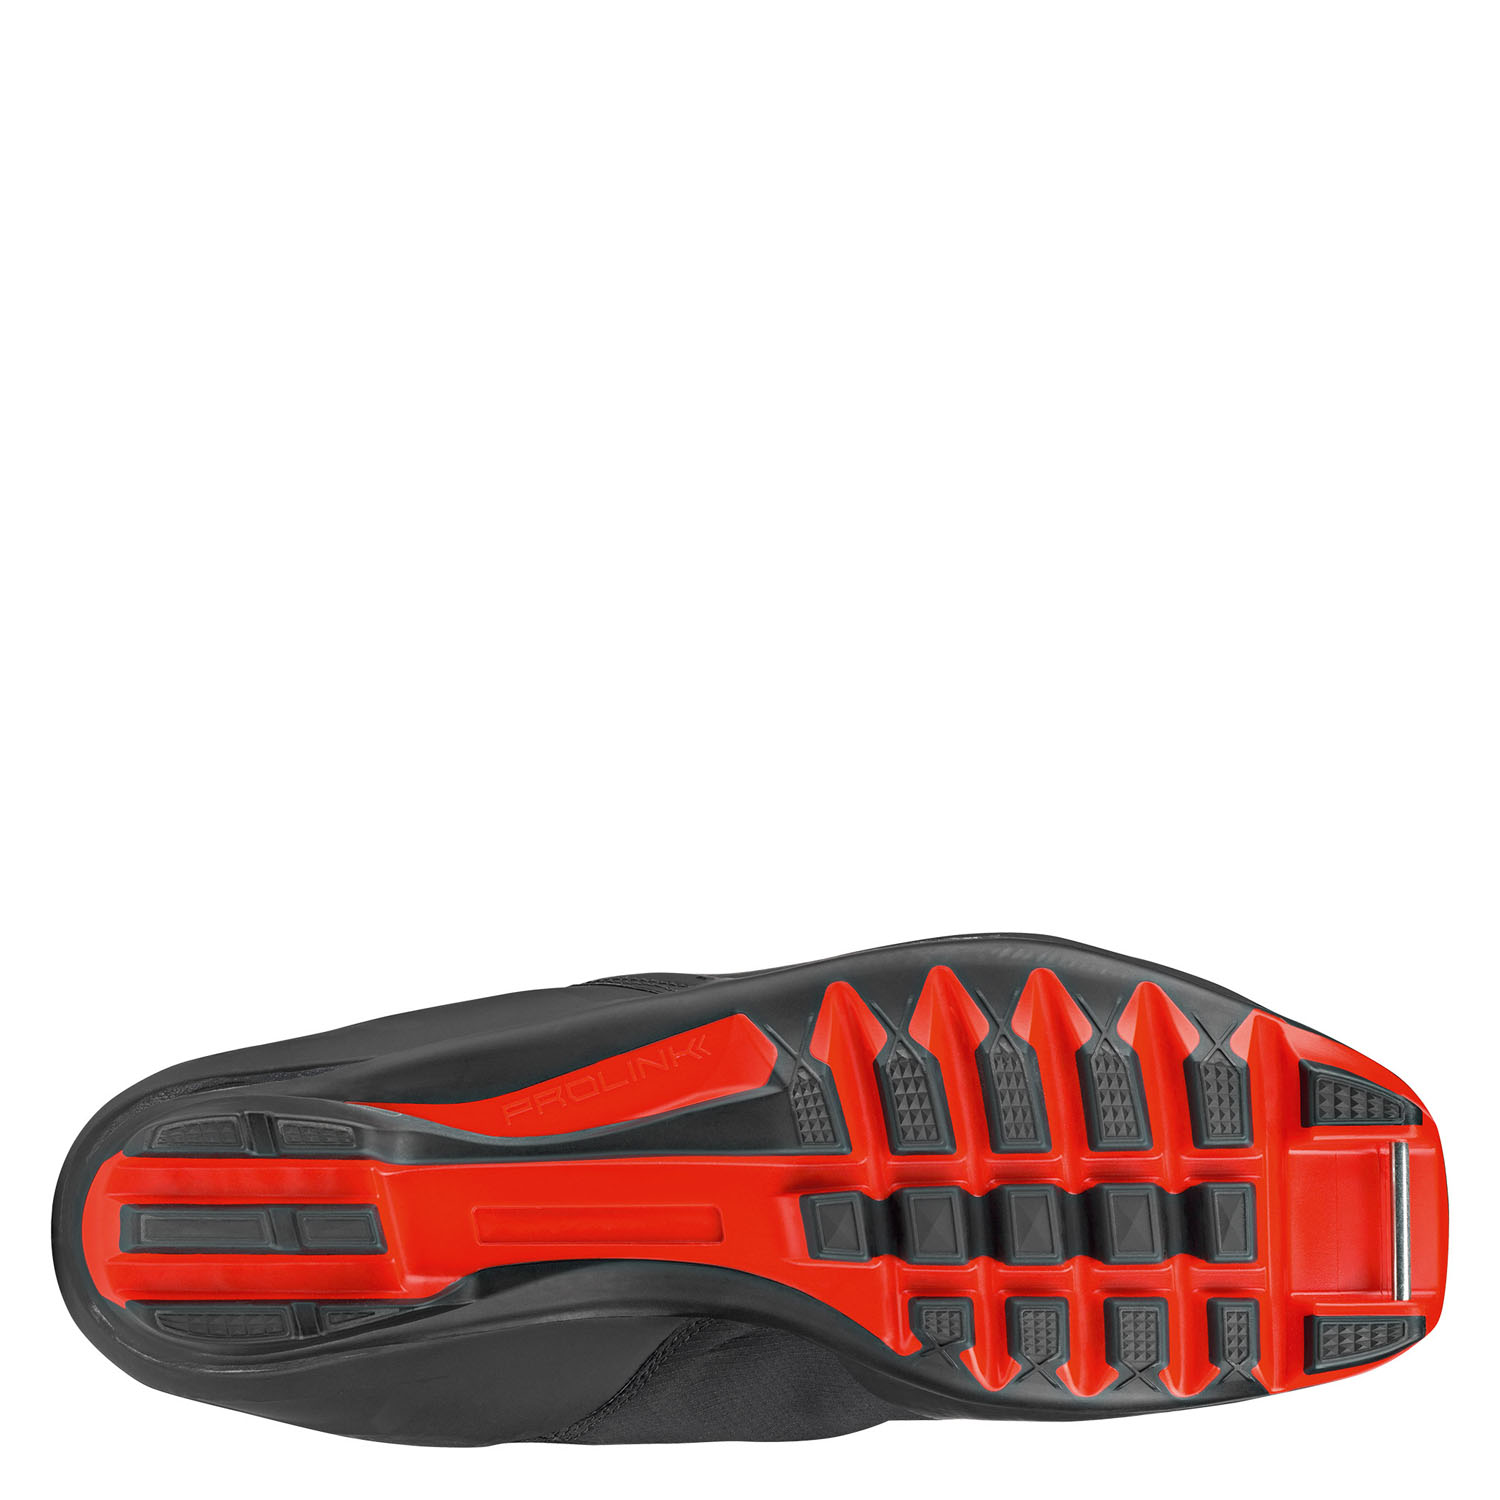 Лыжные ботинки ATOMIC Redster с7